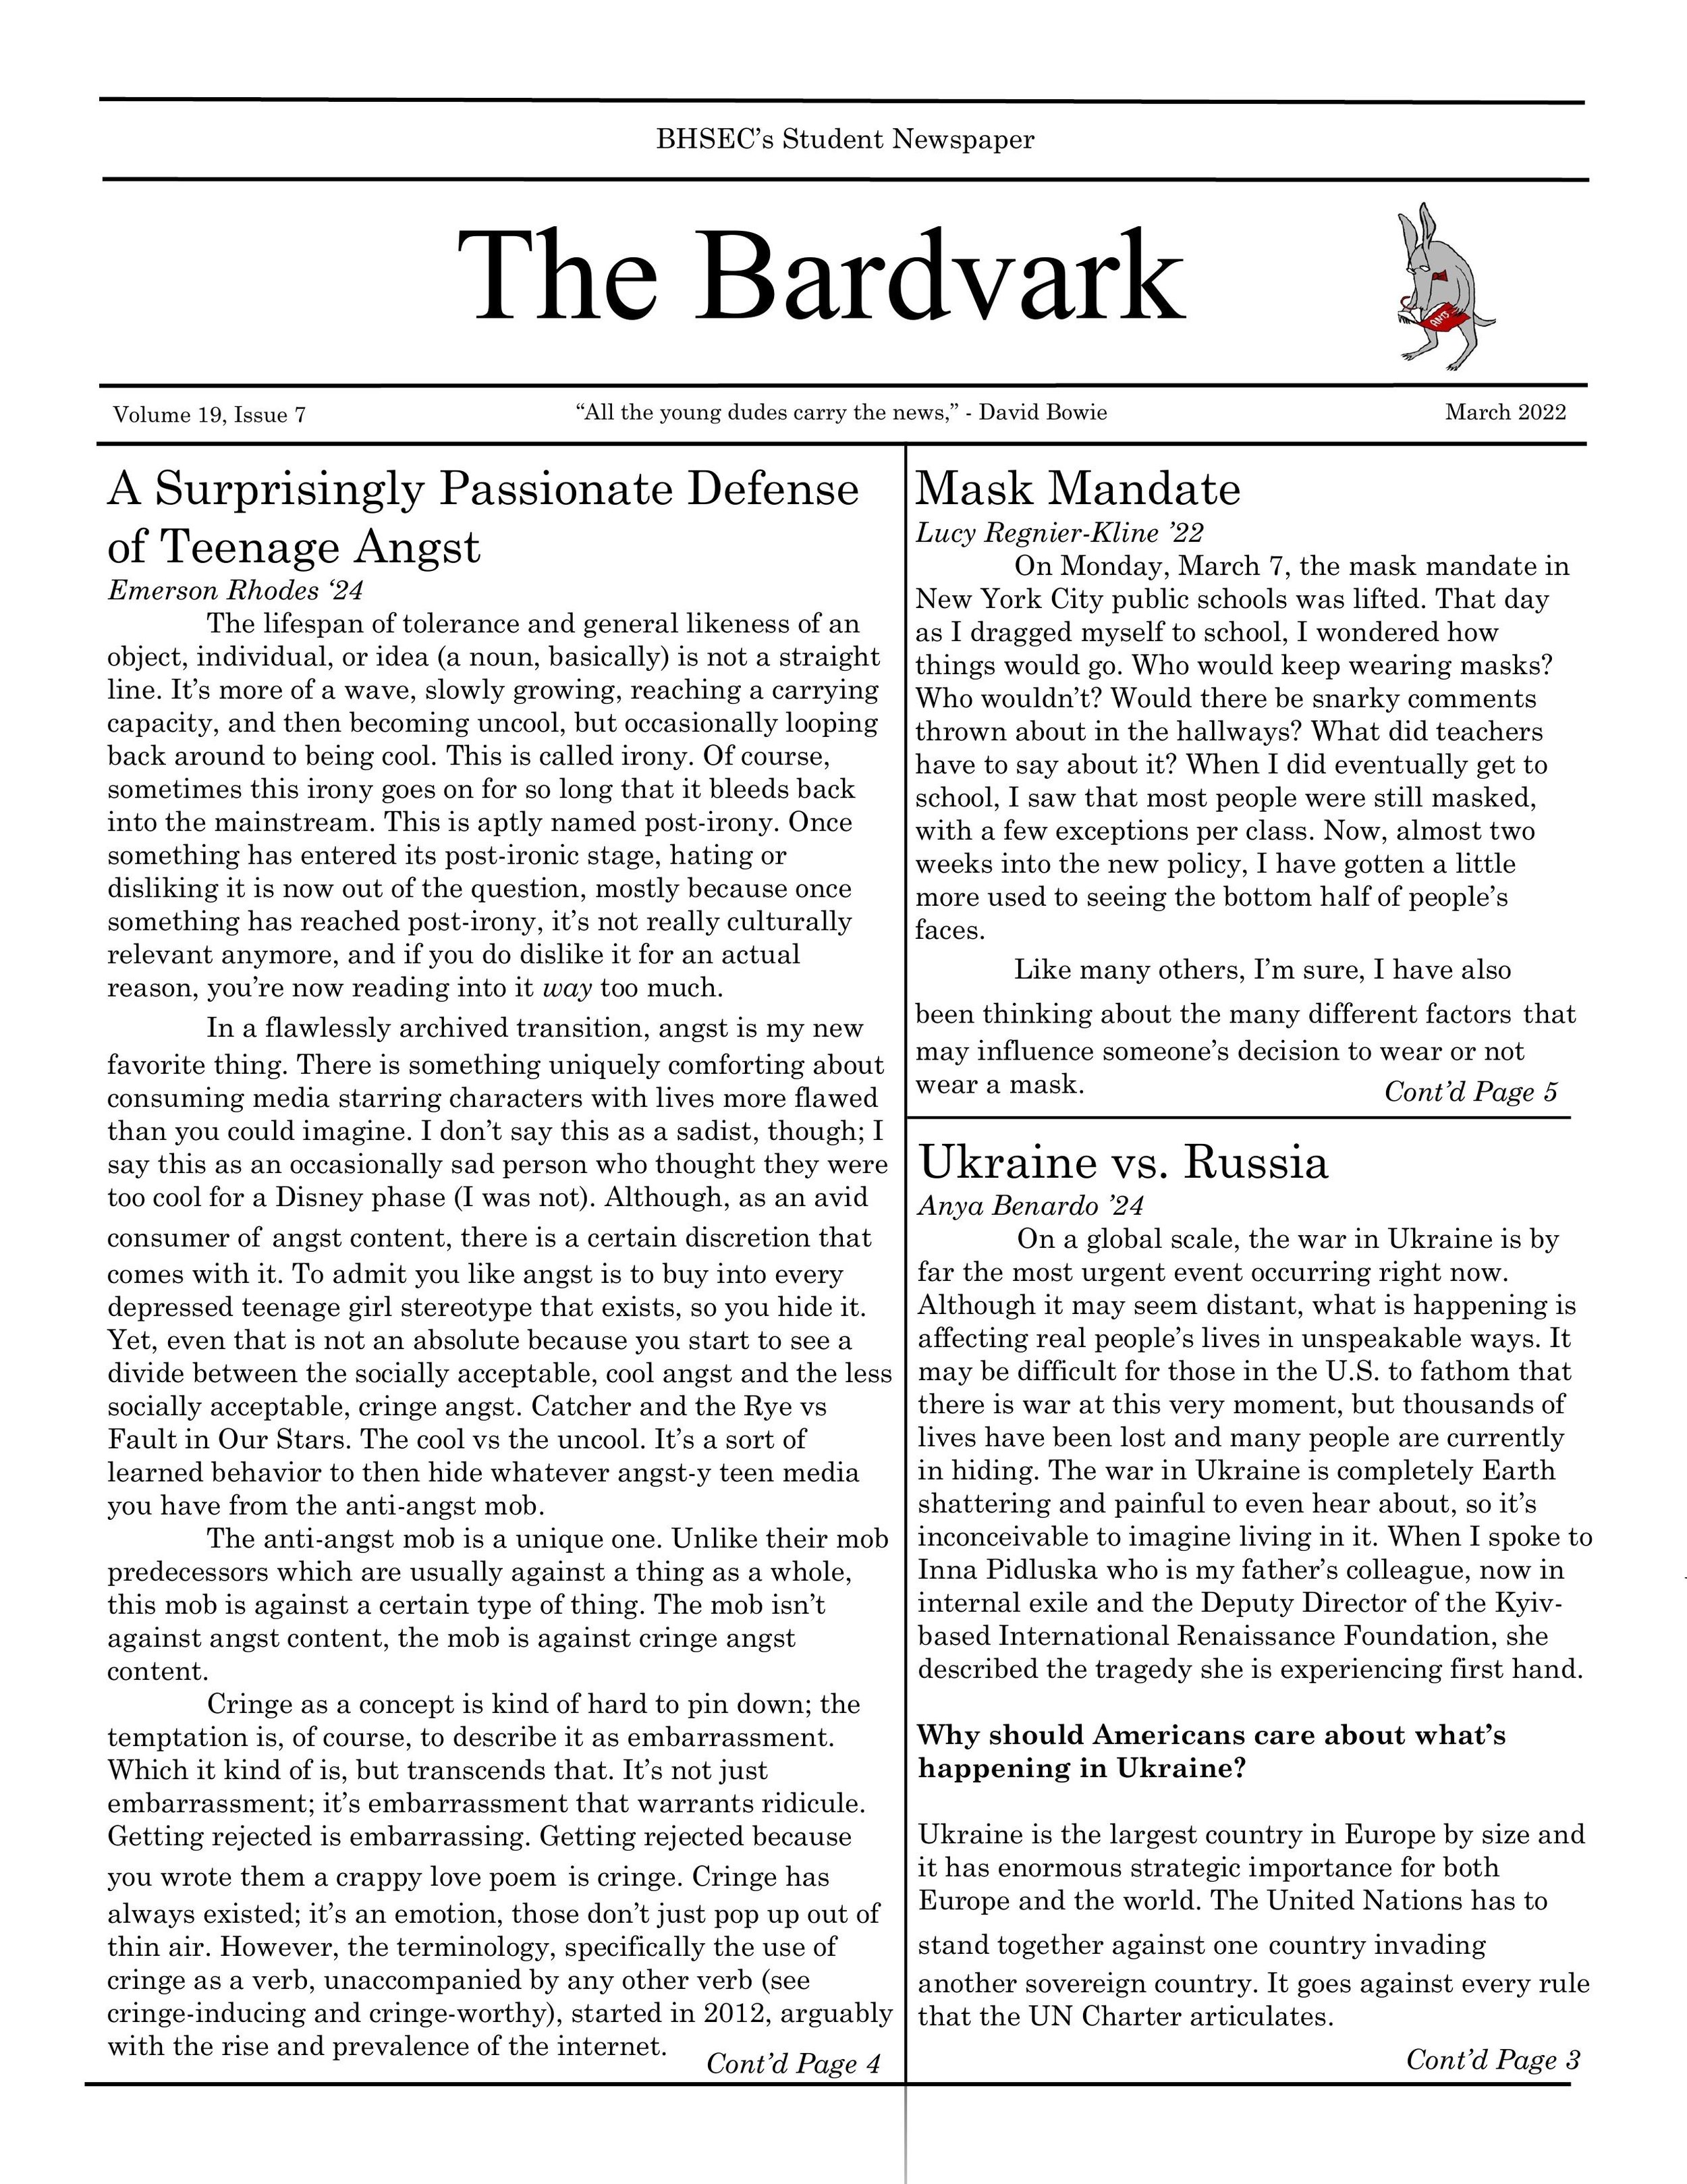 BARDVARK_March_Issue_finally-1[1].jpg